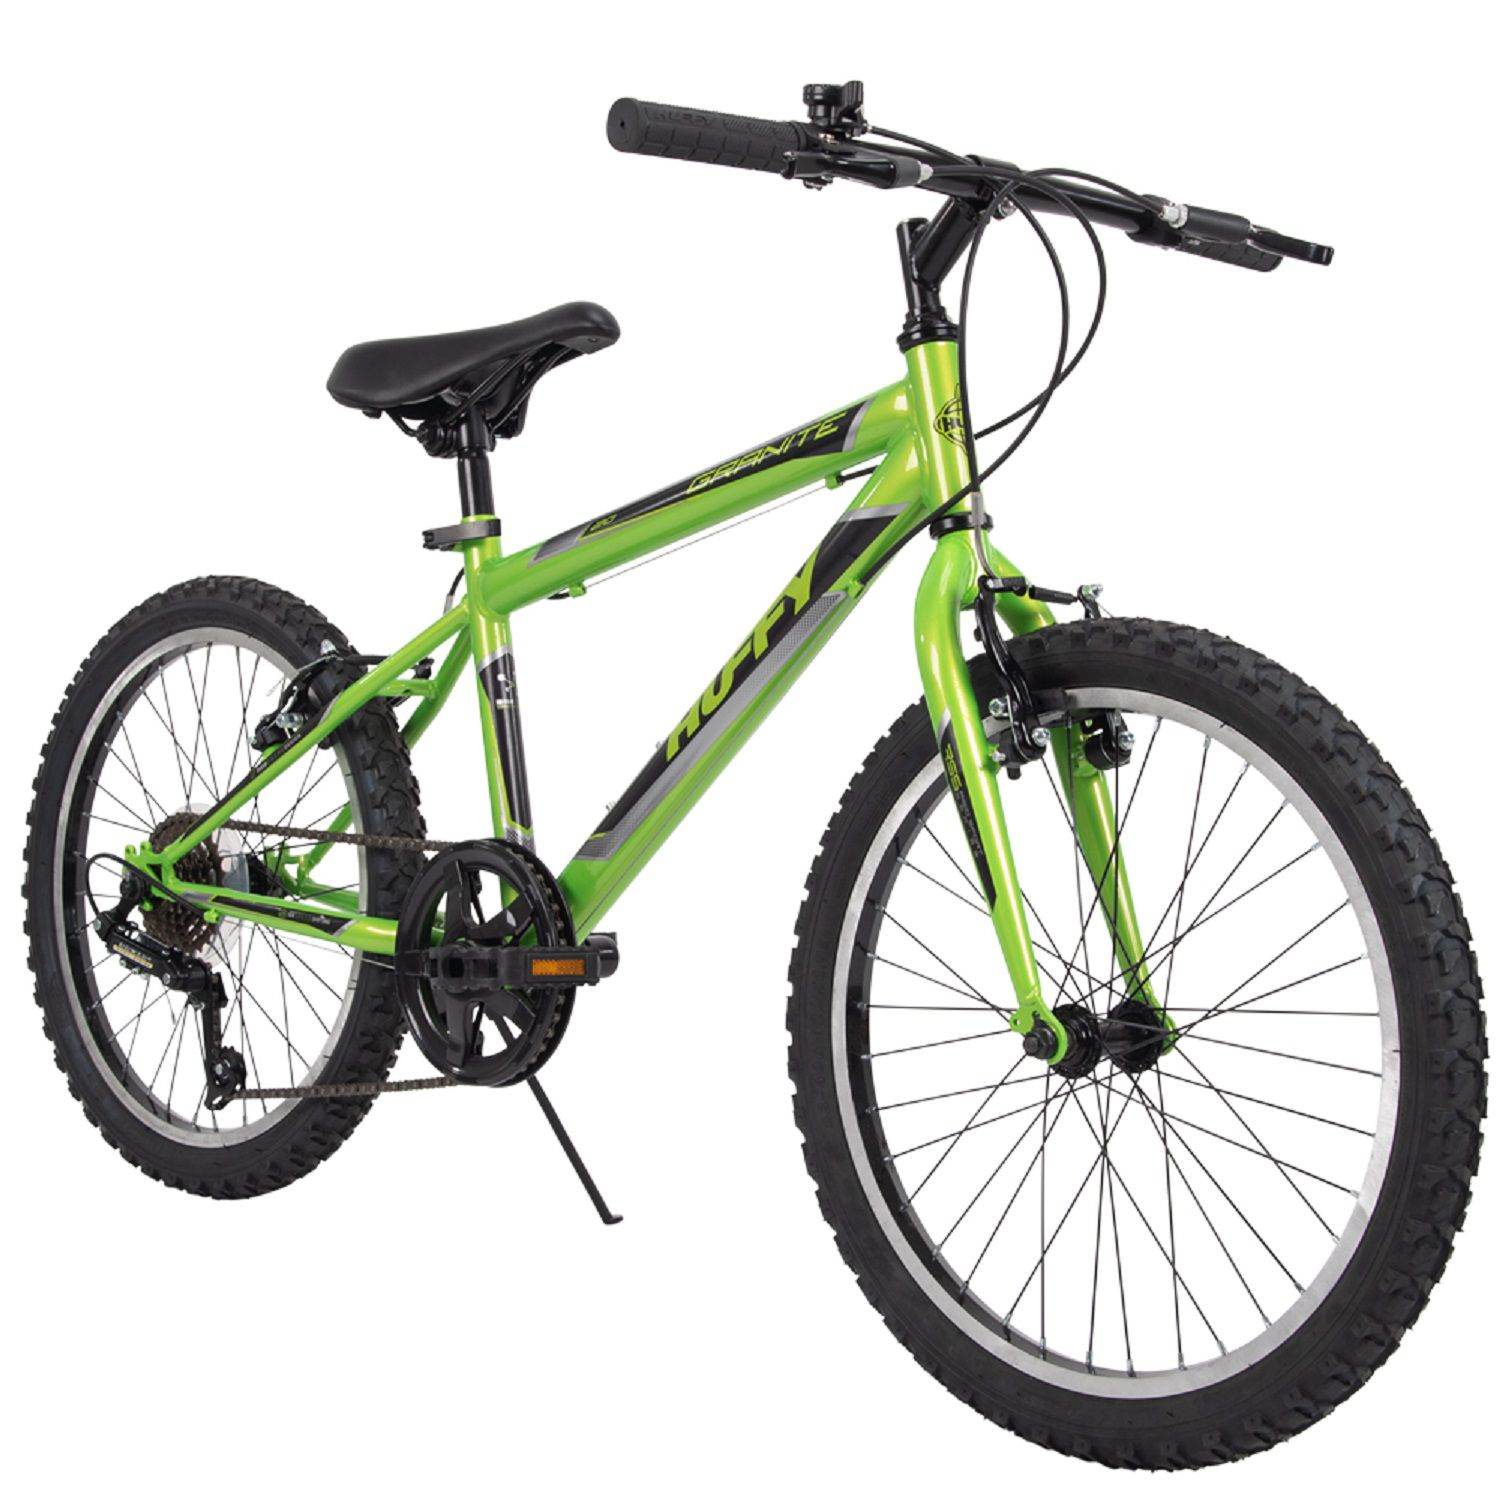 green boys bike